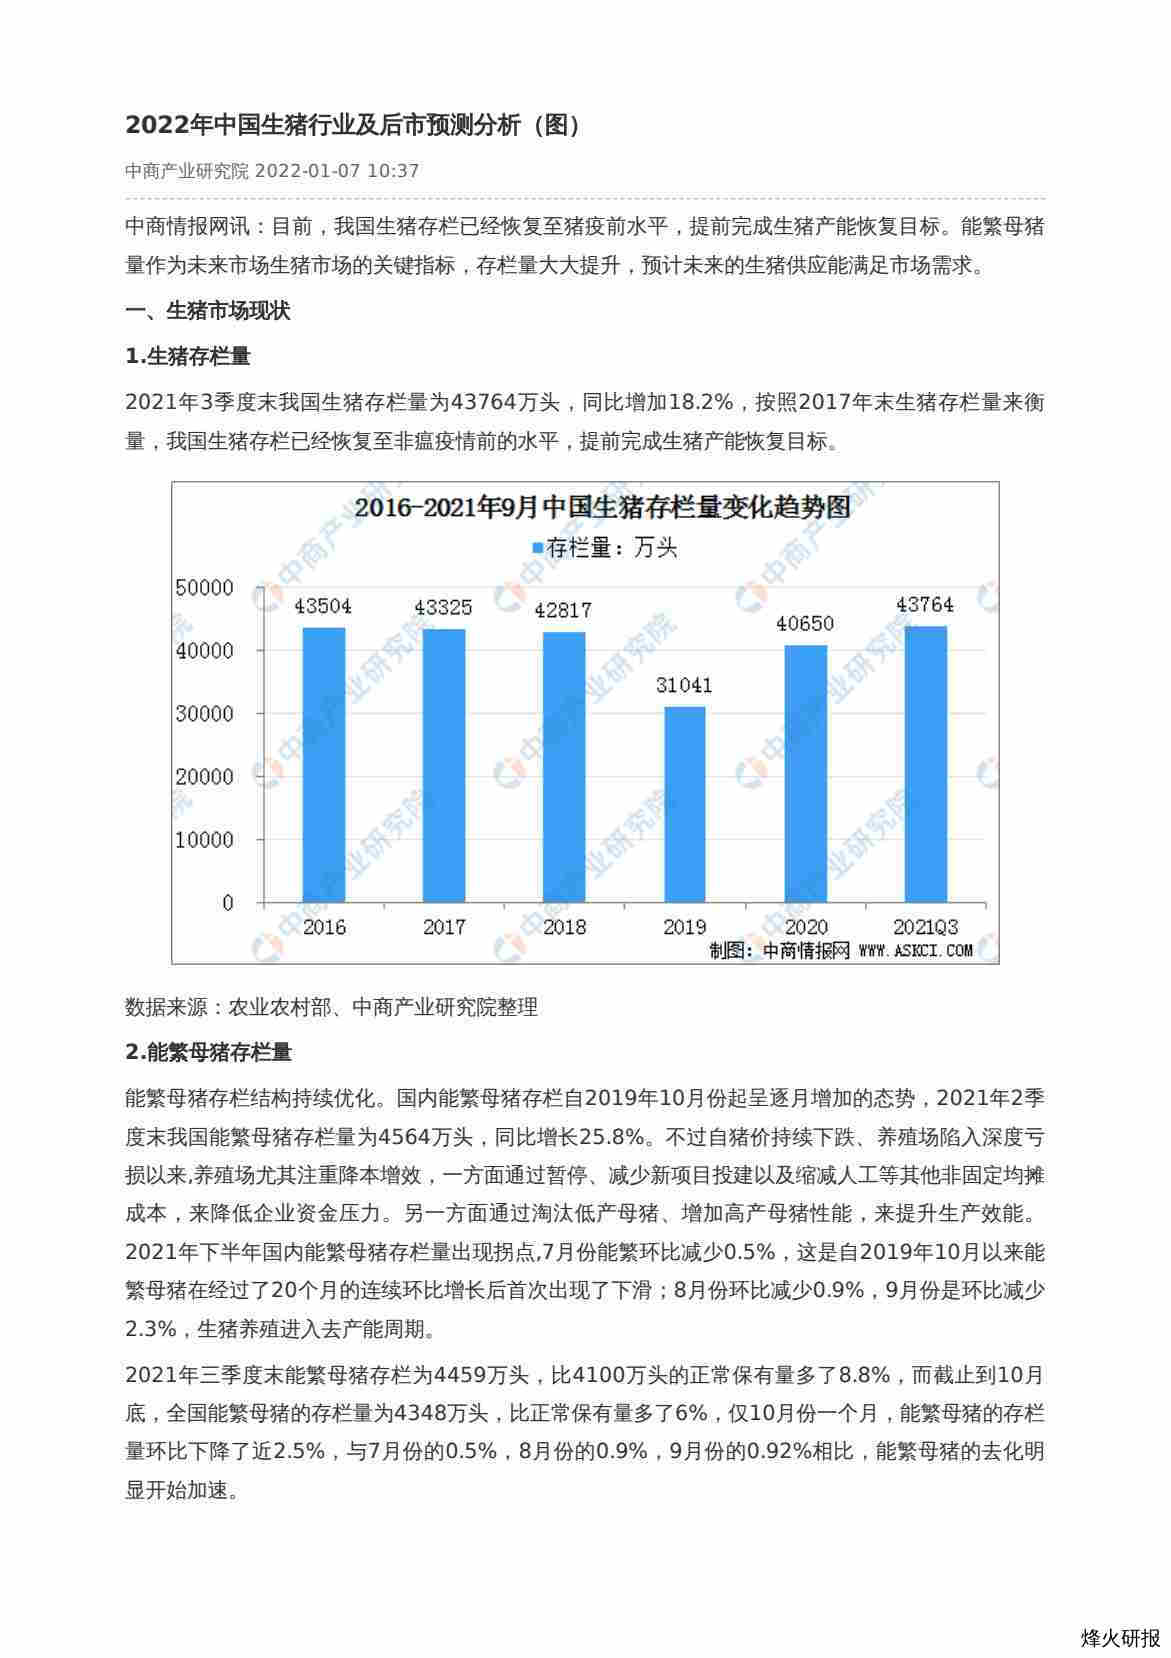 【中商产业研究院】2022年中国生猪行业及后市预测分析（图）.pdf-第一页